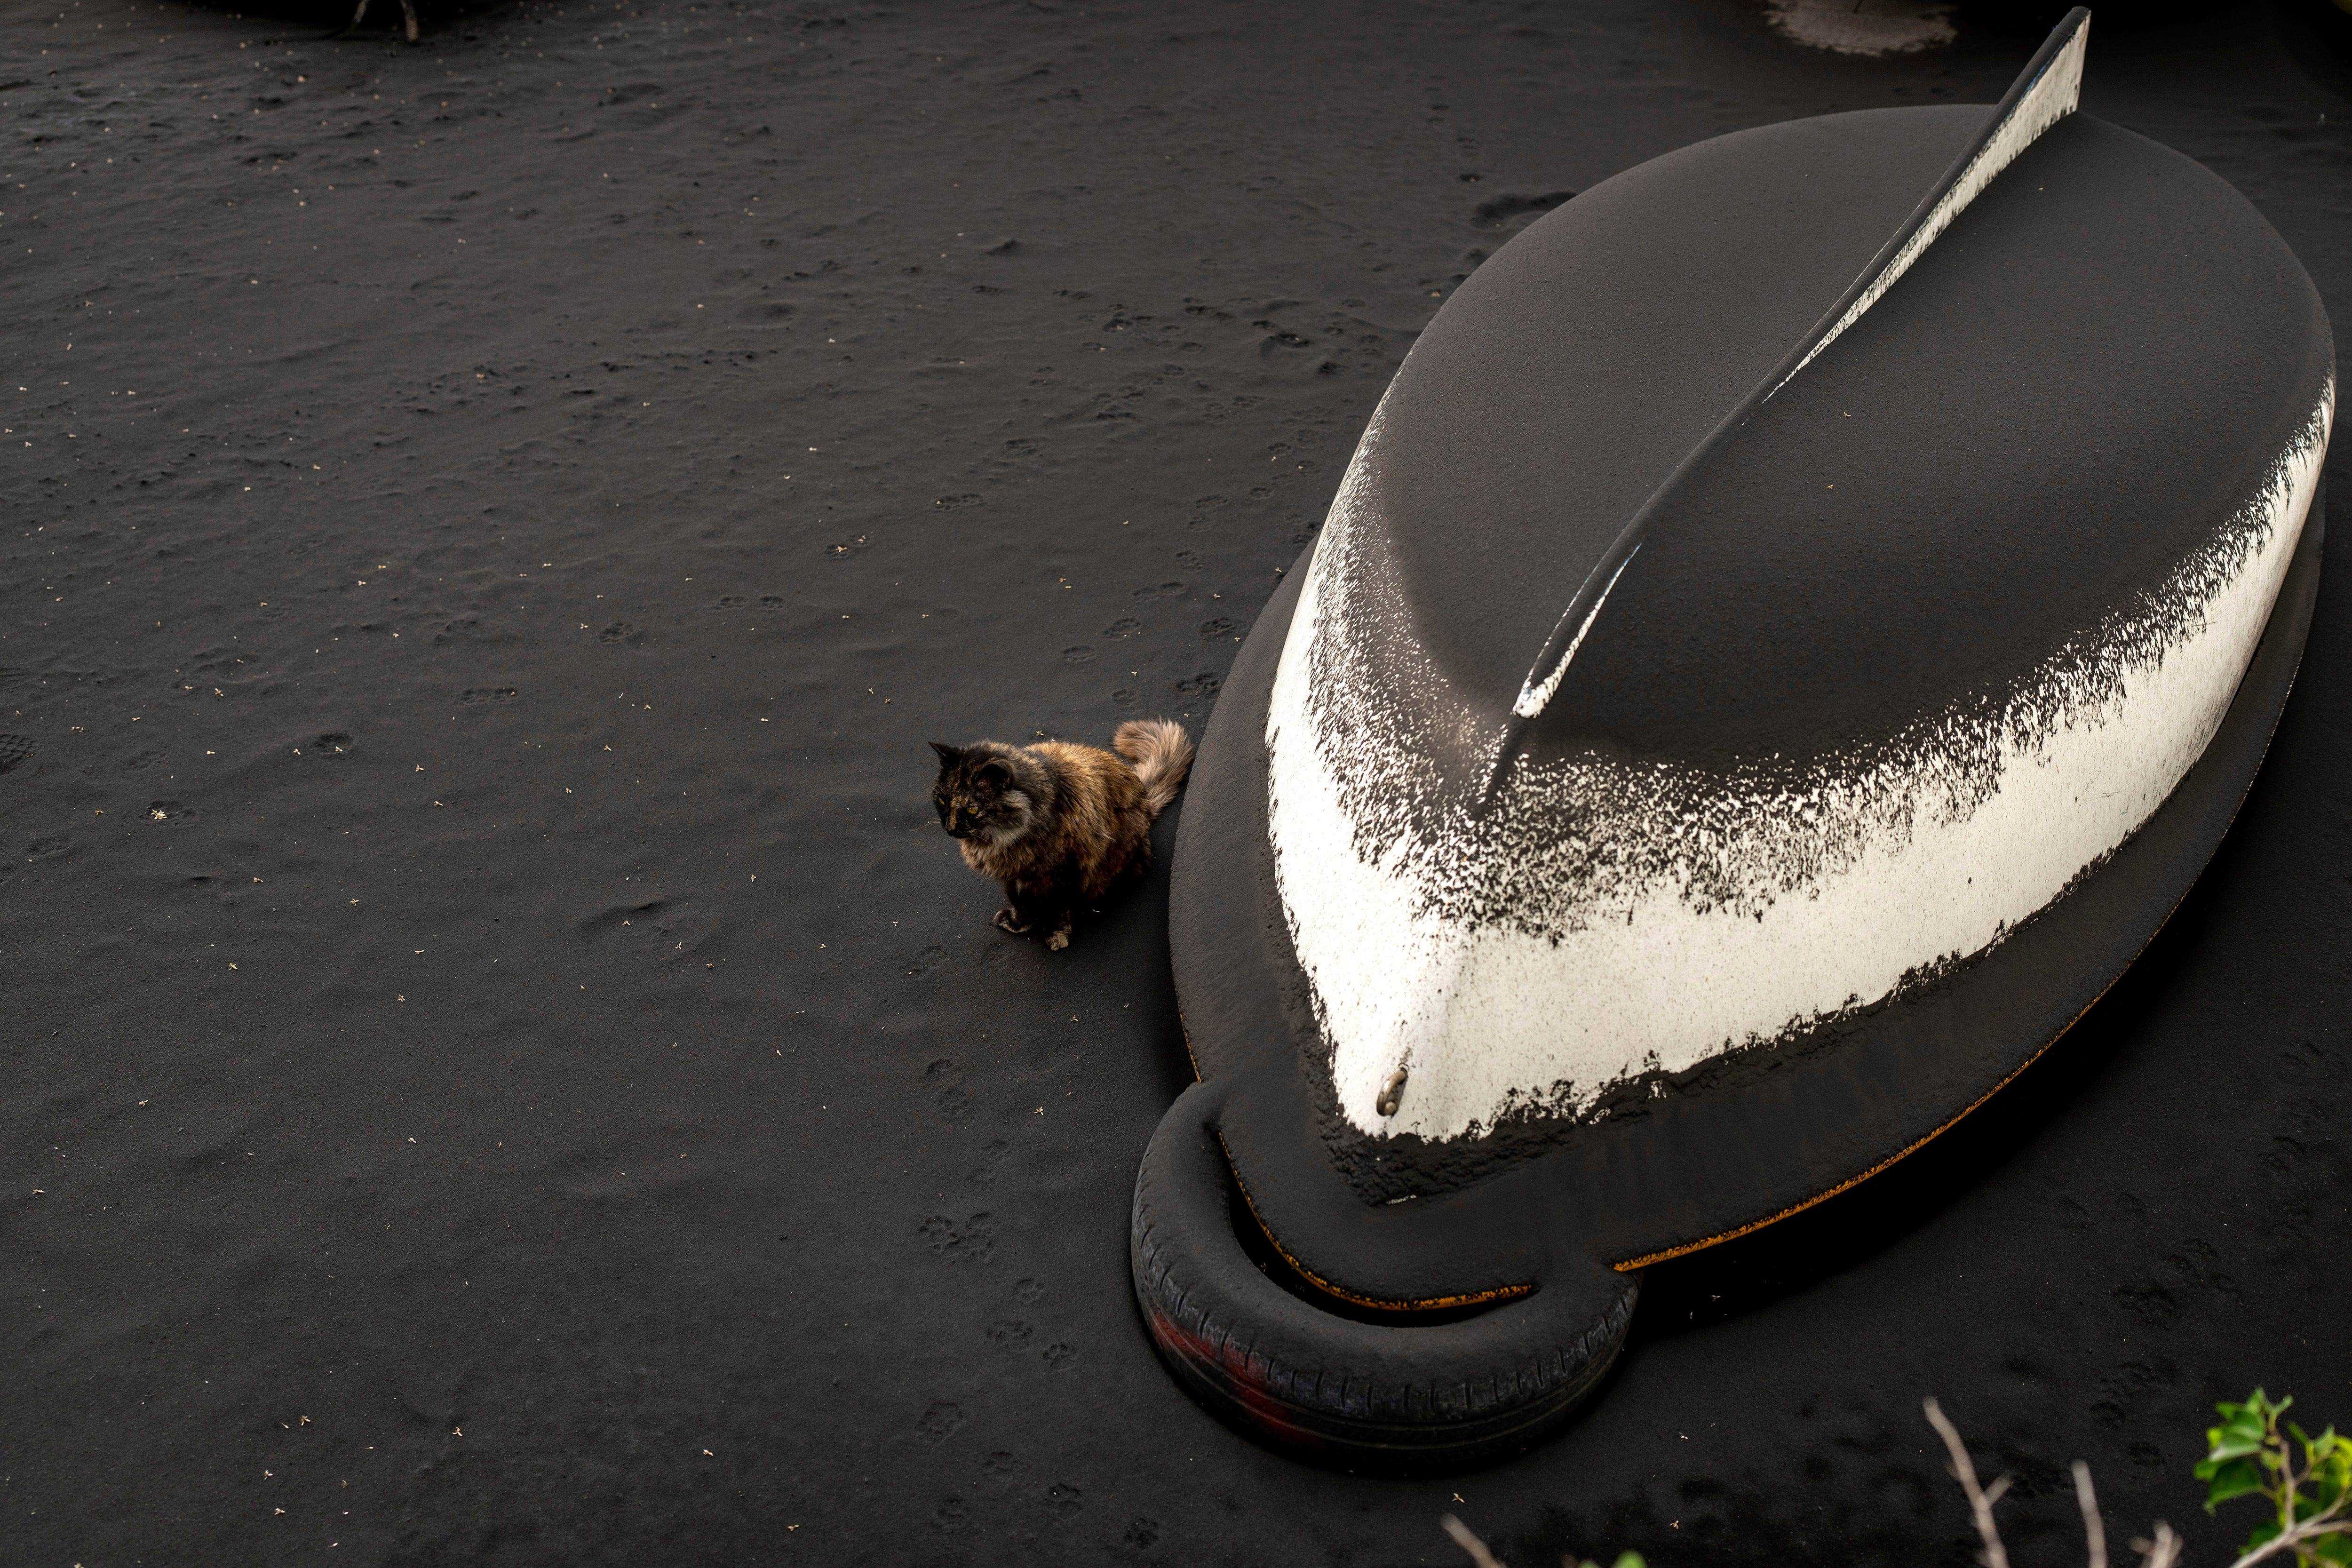 Eine Katze sitzt neben einem umgestürzten Boot, das mit Asche bedeckt ist